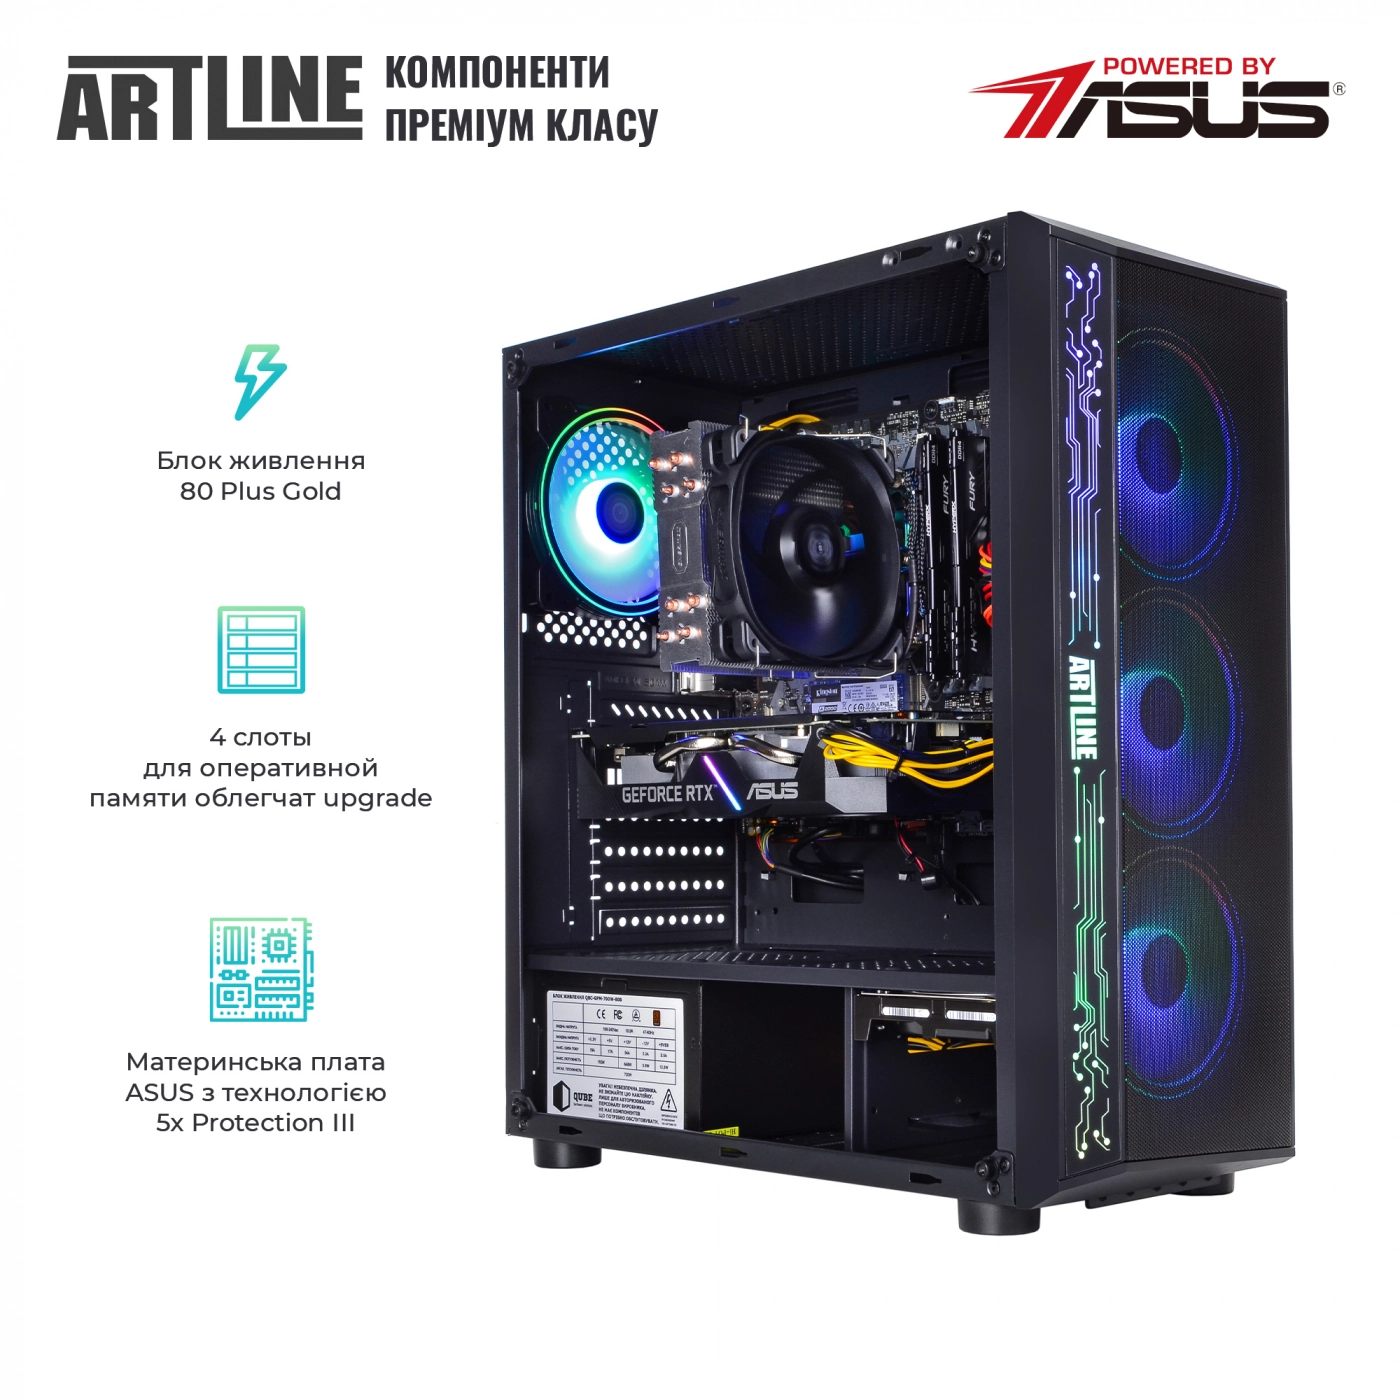 Купить Компьютер ARTLINE Gaming X73v24 - фото 2